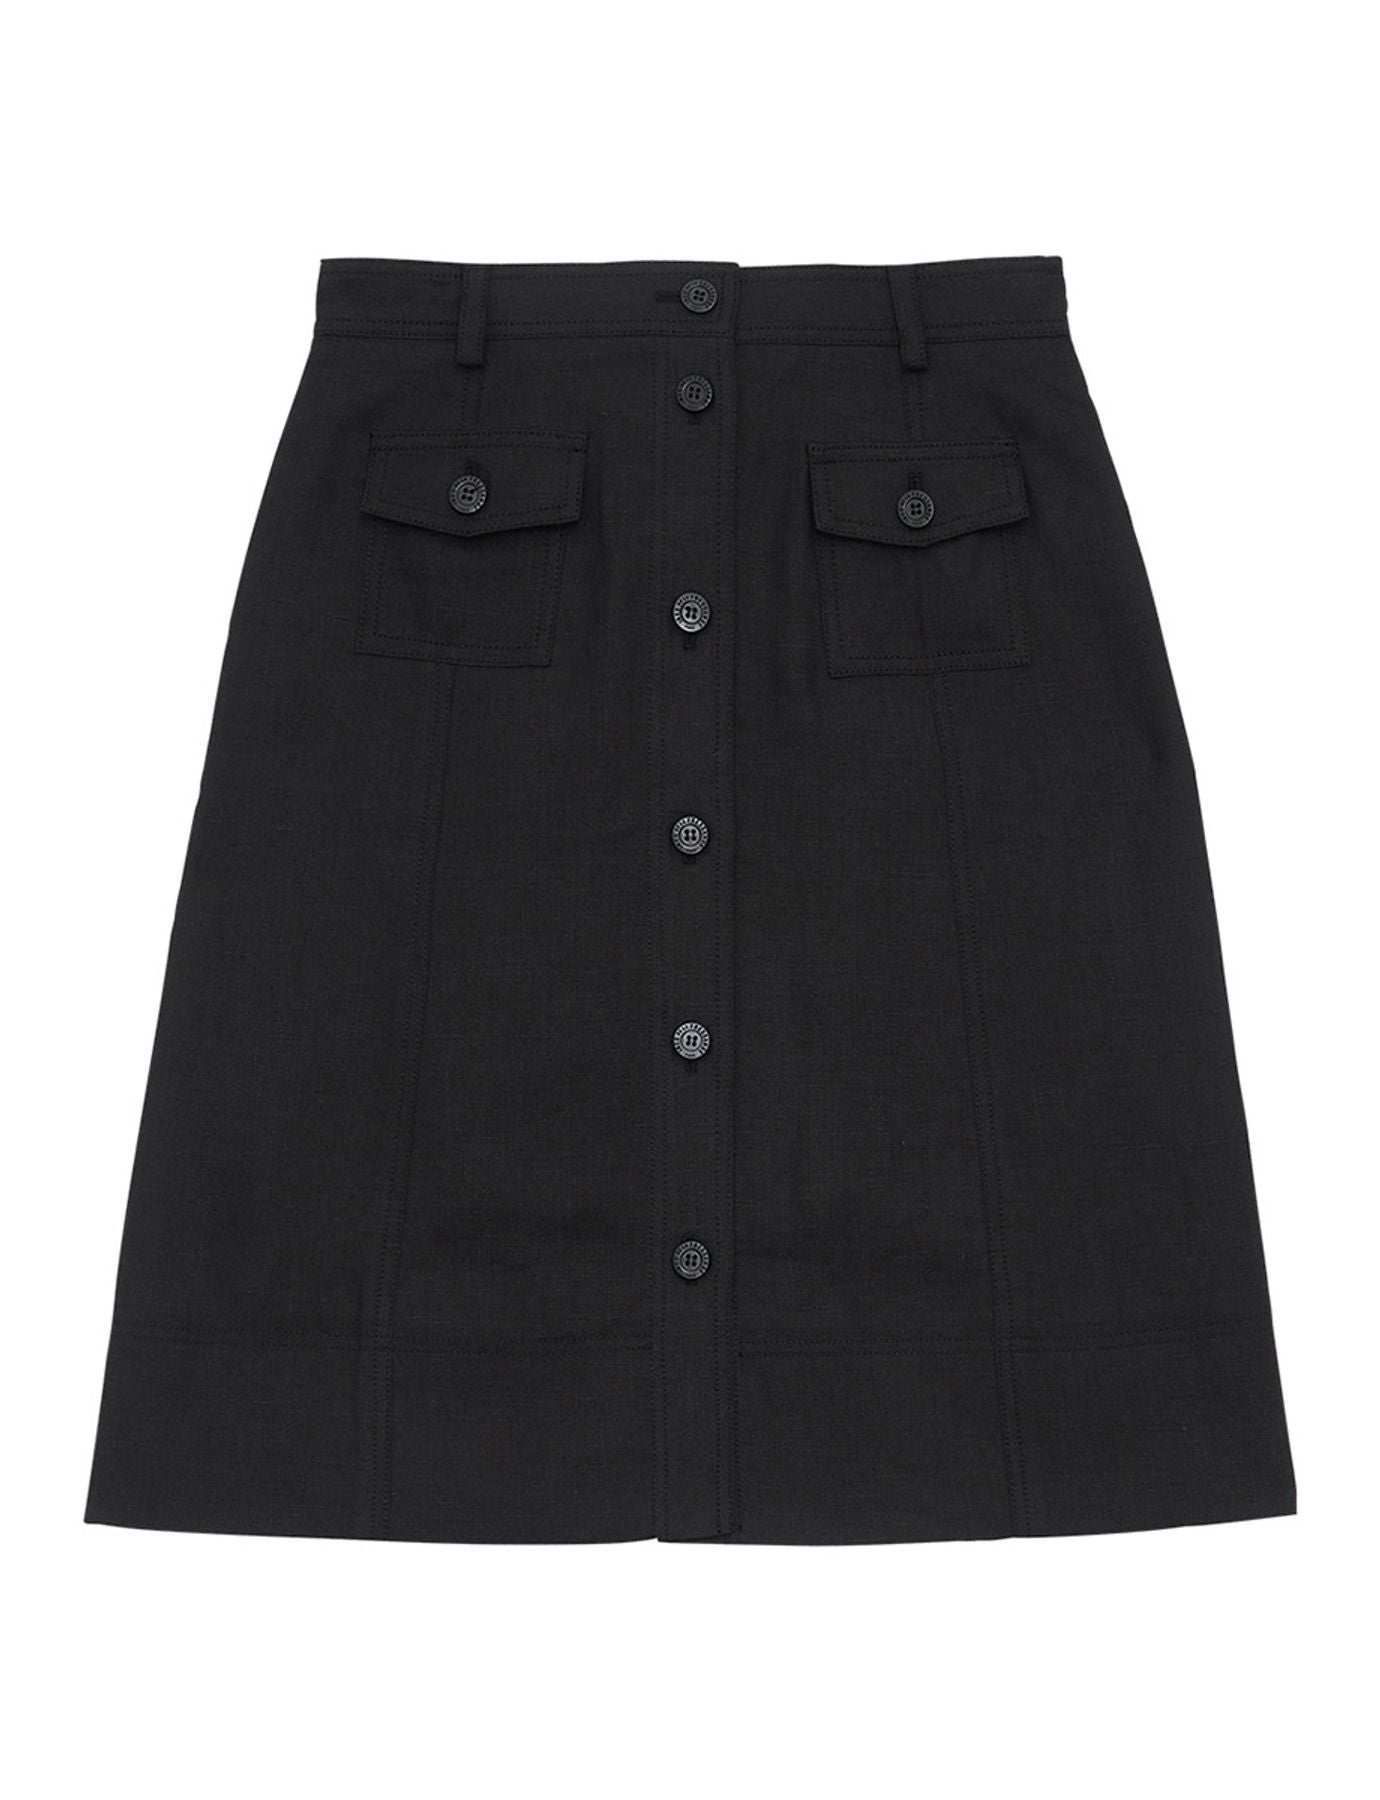 rachel skirt